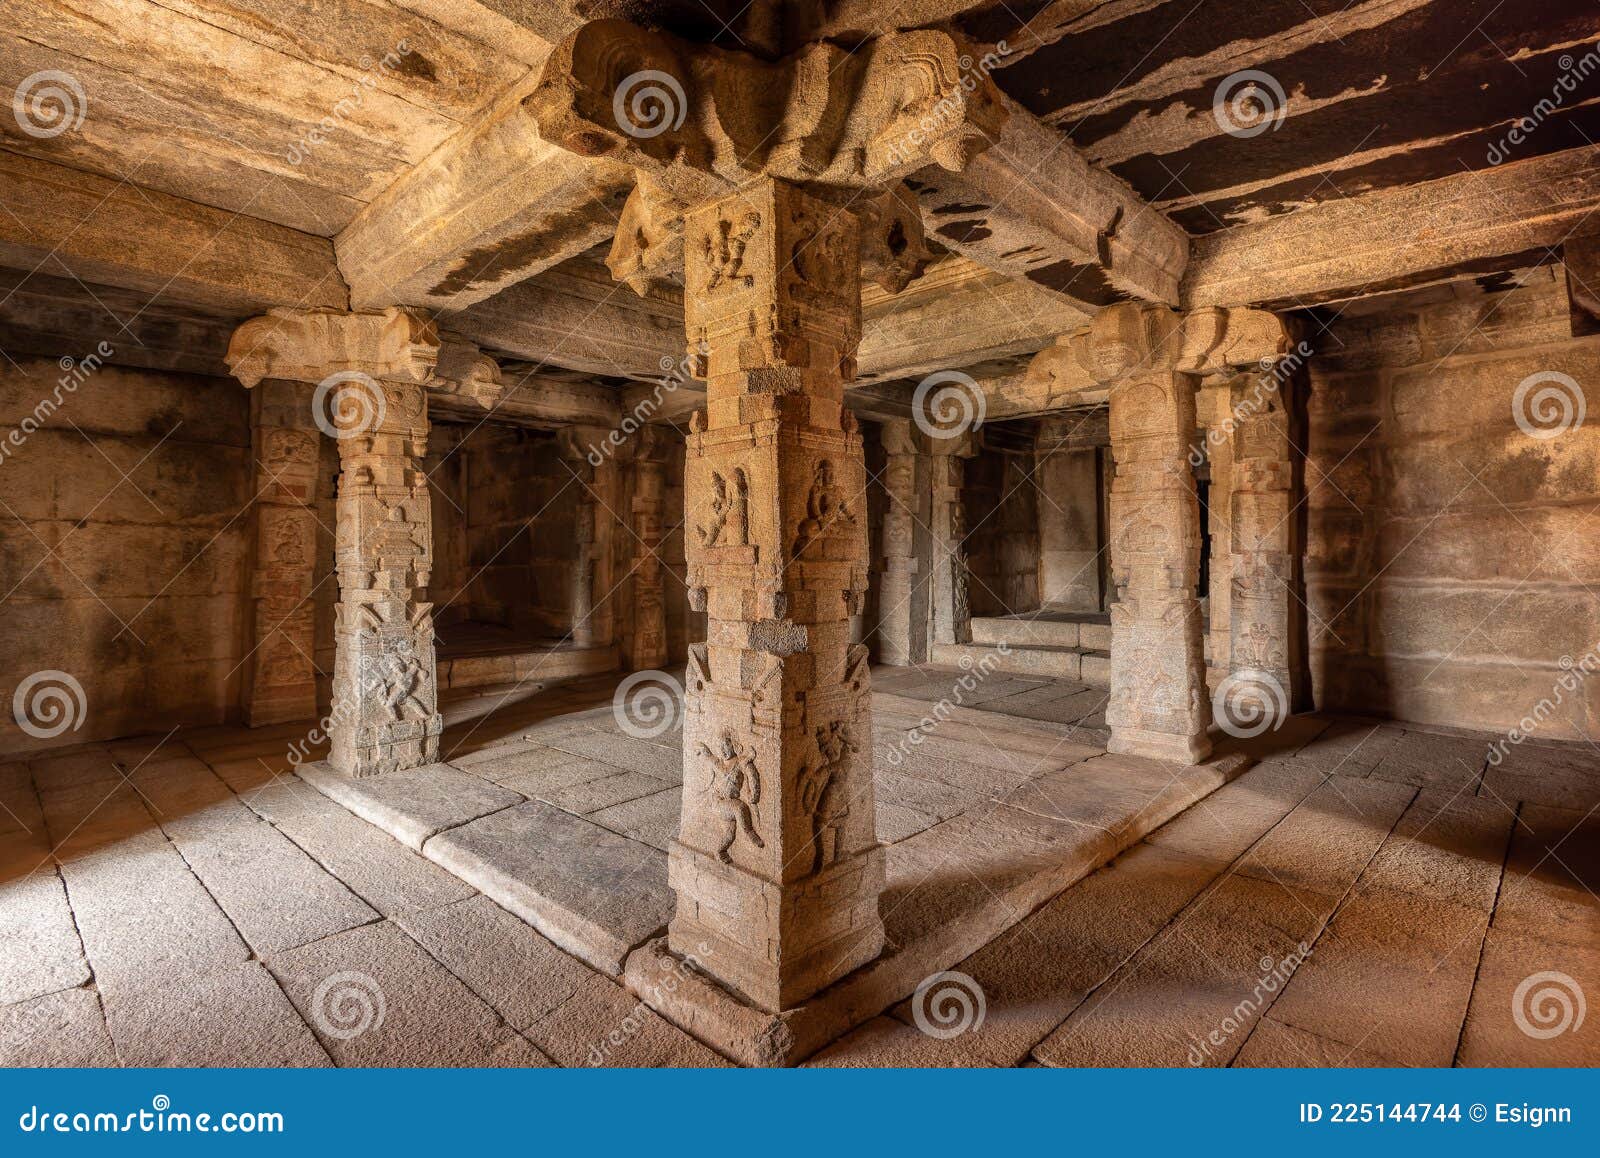 view of chandrasekhara temple, the ruins of ancient city vijayanagar at hampi, karnataka, india